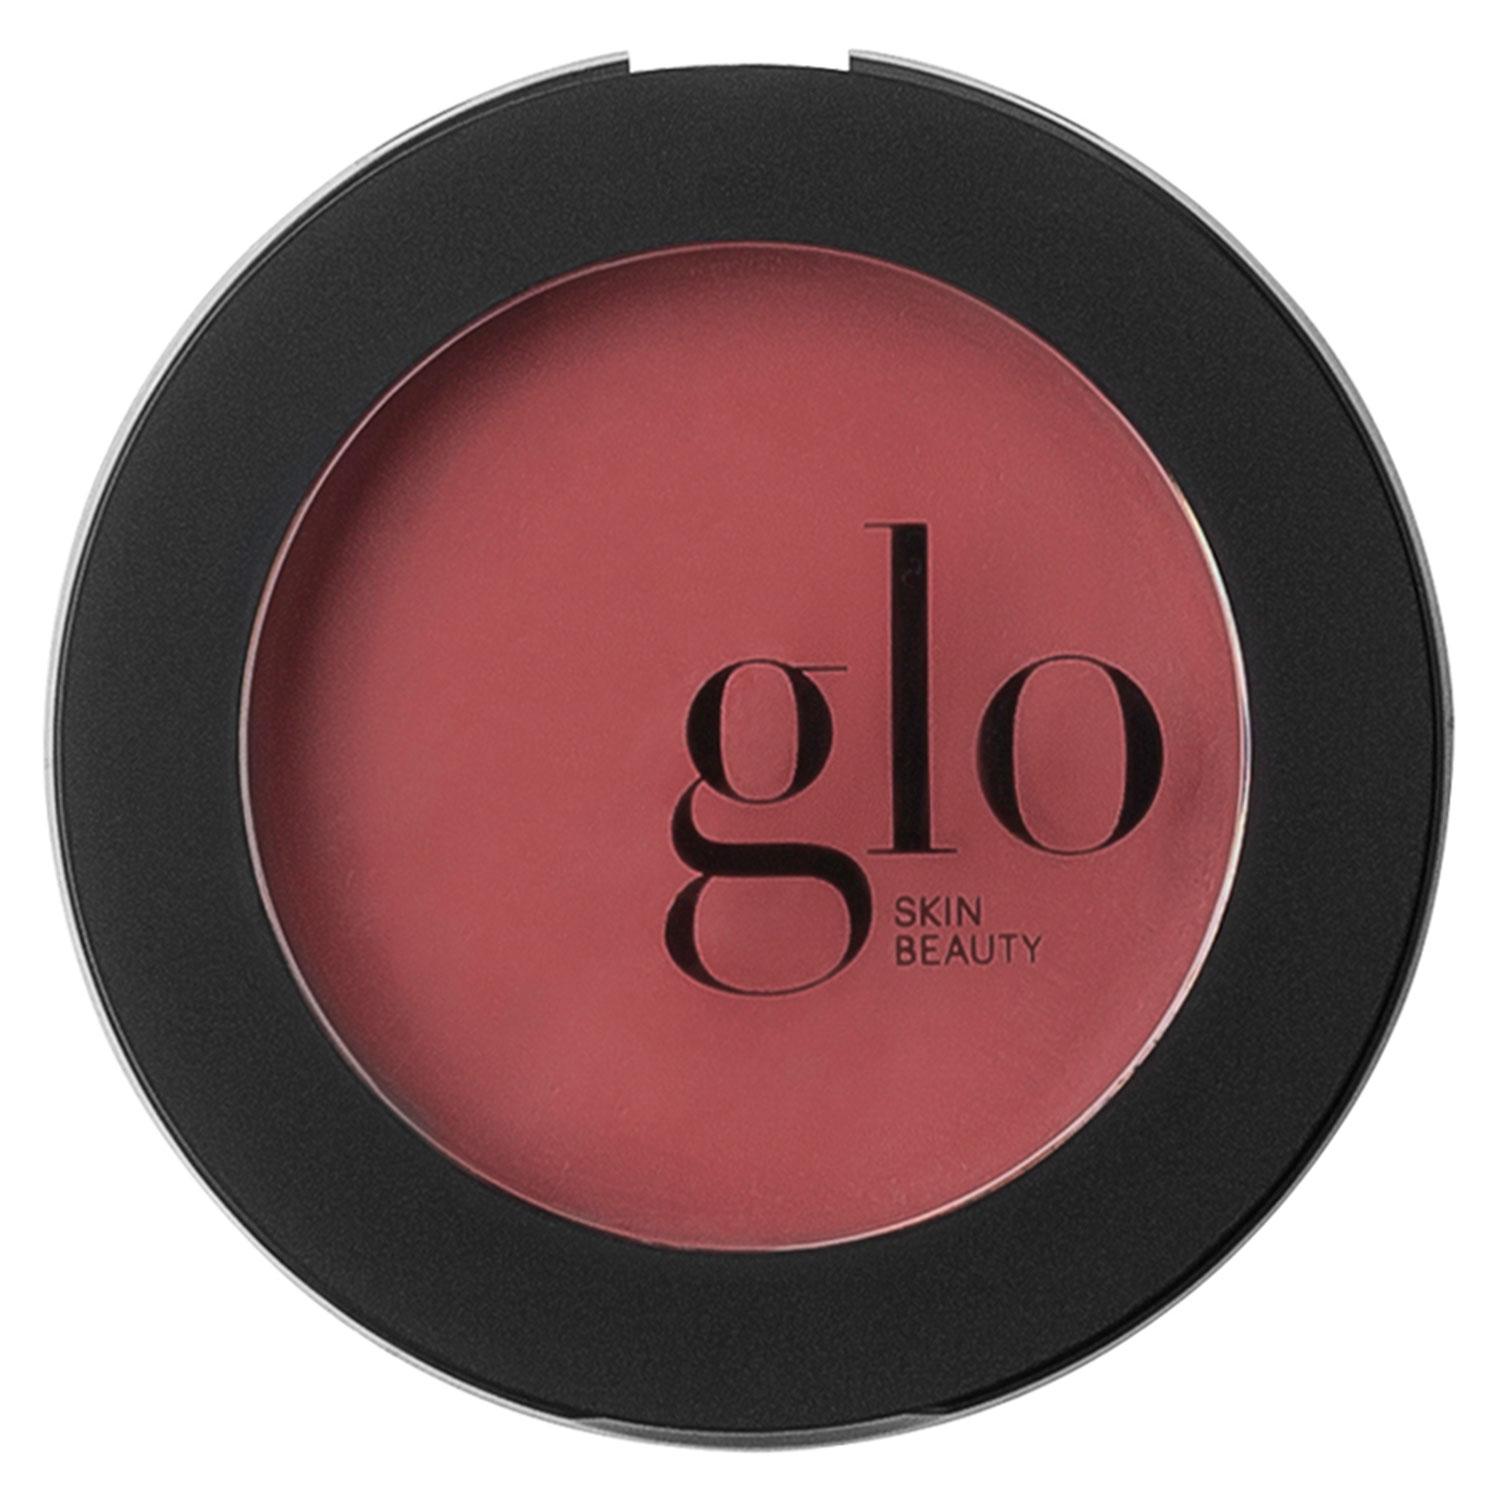 Glo Skin Beauty Blush - Cream Blush Firstlove